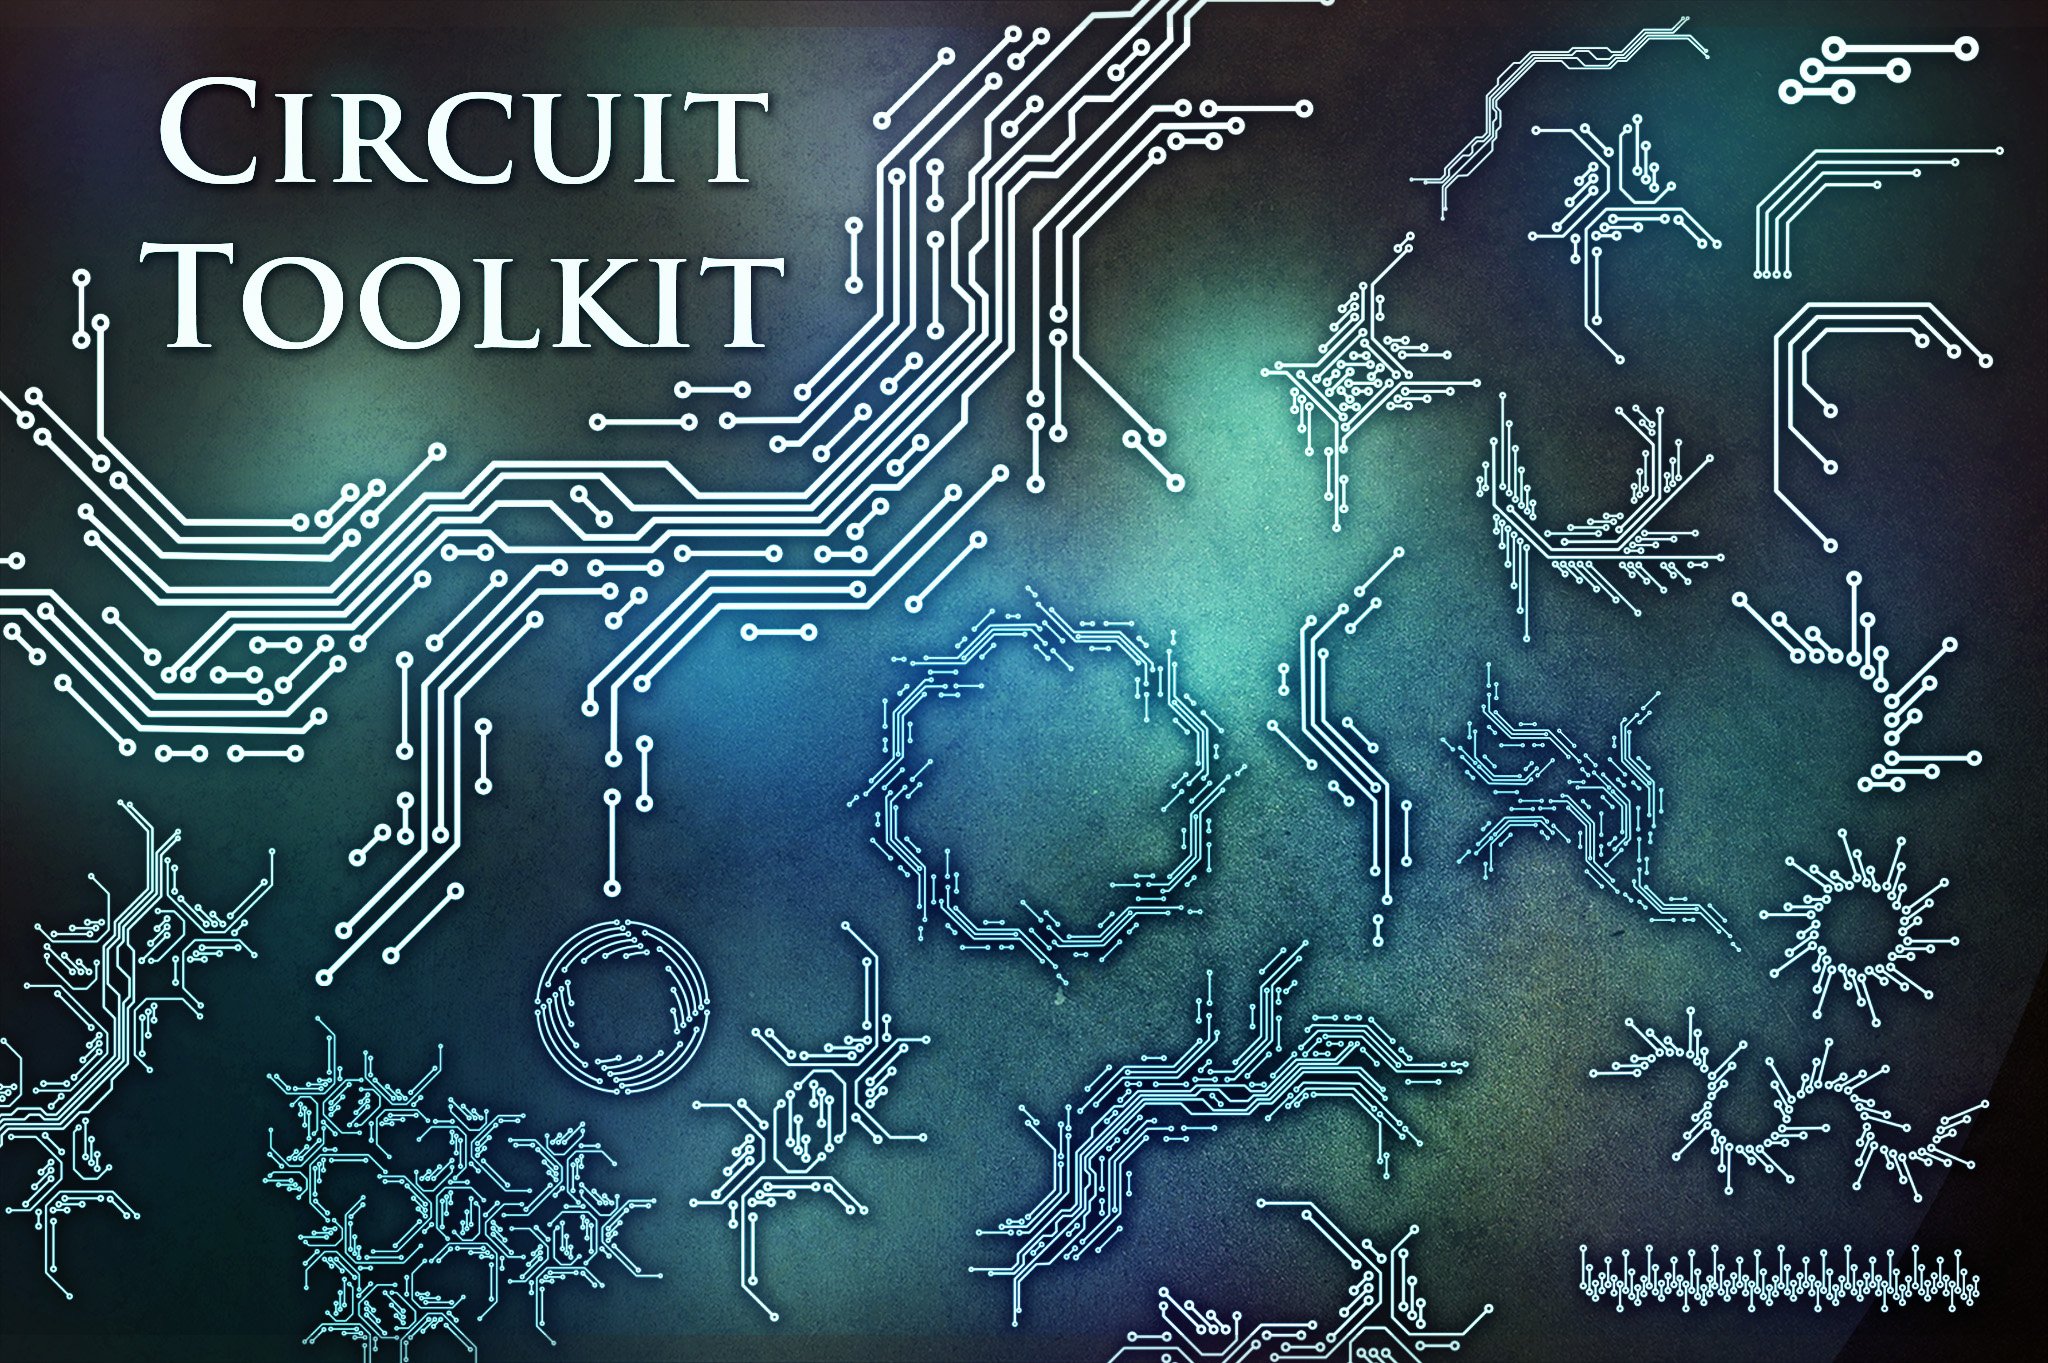 Futuristic circuit toolkit.